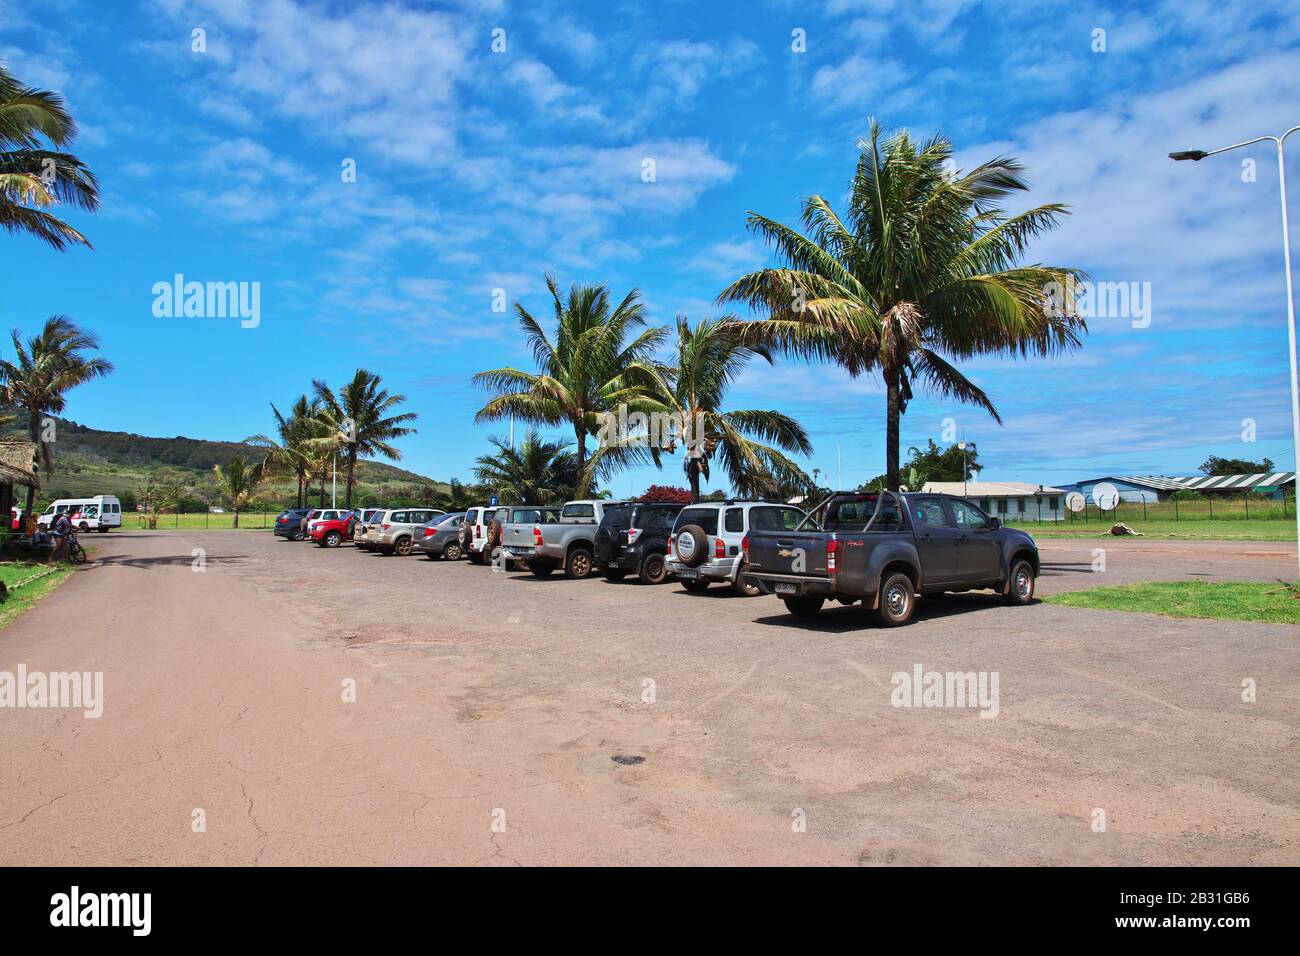 Hanga Roa, île de Pâques / Chili - 29 déc 2019: Le parking à l'aéroport de Hanga Roa sur Rapa Nui, île de Pâques, Chili Banque D'Images